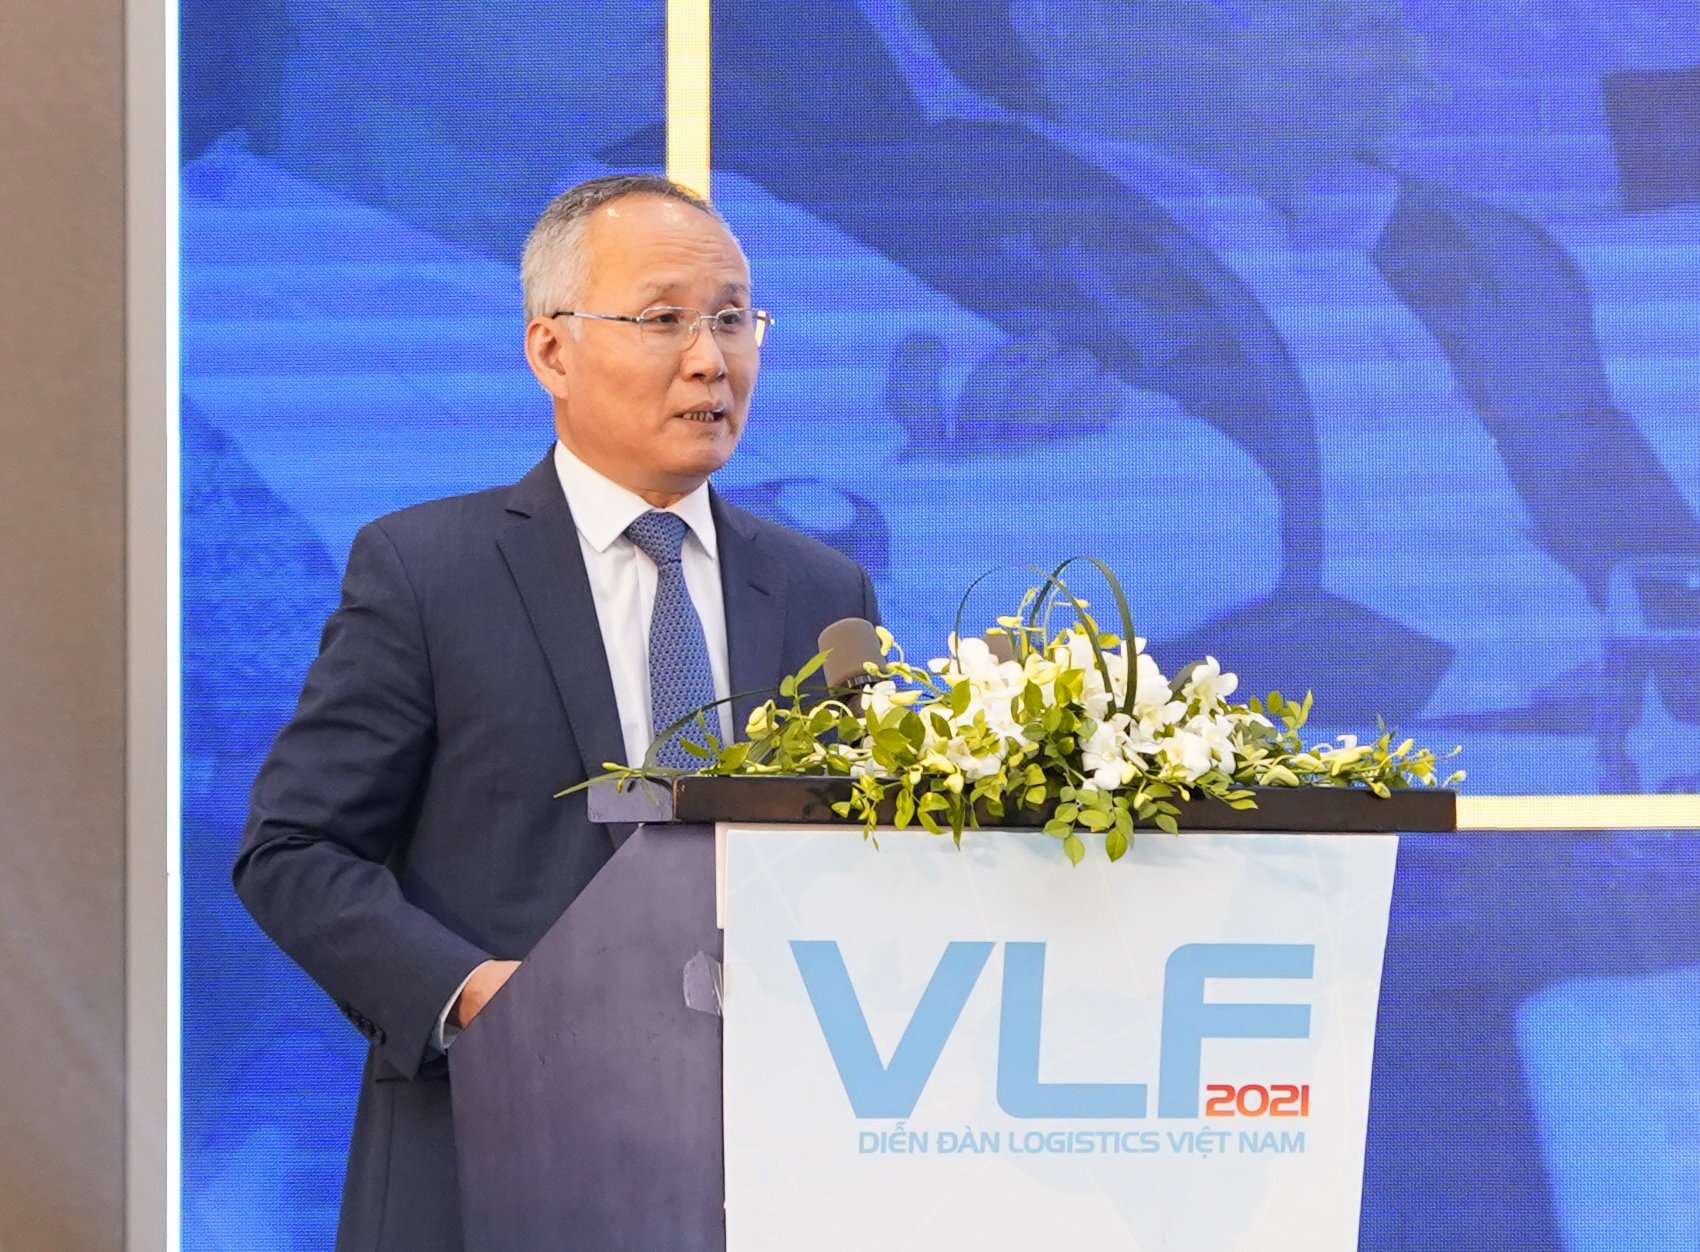 Theo Thứ trưởng Trần Quốc Khánh, ngành logistics còn nhiều dư địa tăng trưởng cao trong năm 2022.